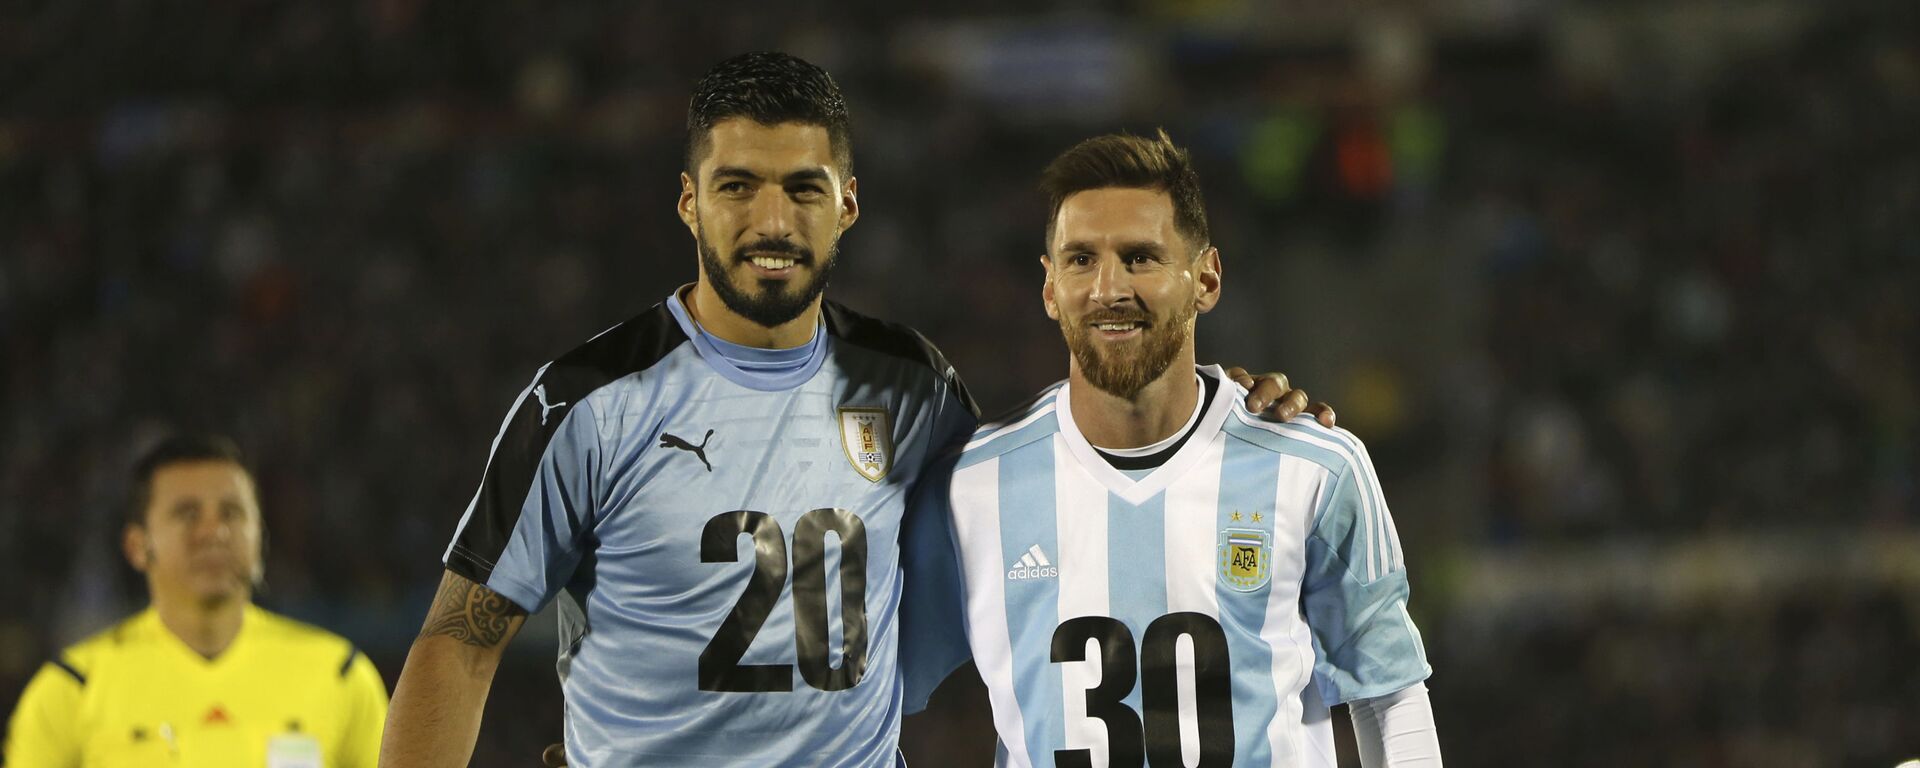 Los futbolistas Luis Suárez, de Uruguay, y Lionel Messi, de Argentina, promocionando la candidatura para el Mundial de 2030 - Sputnik Mundo, 1920, 20.04.2021